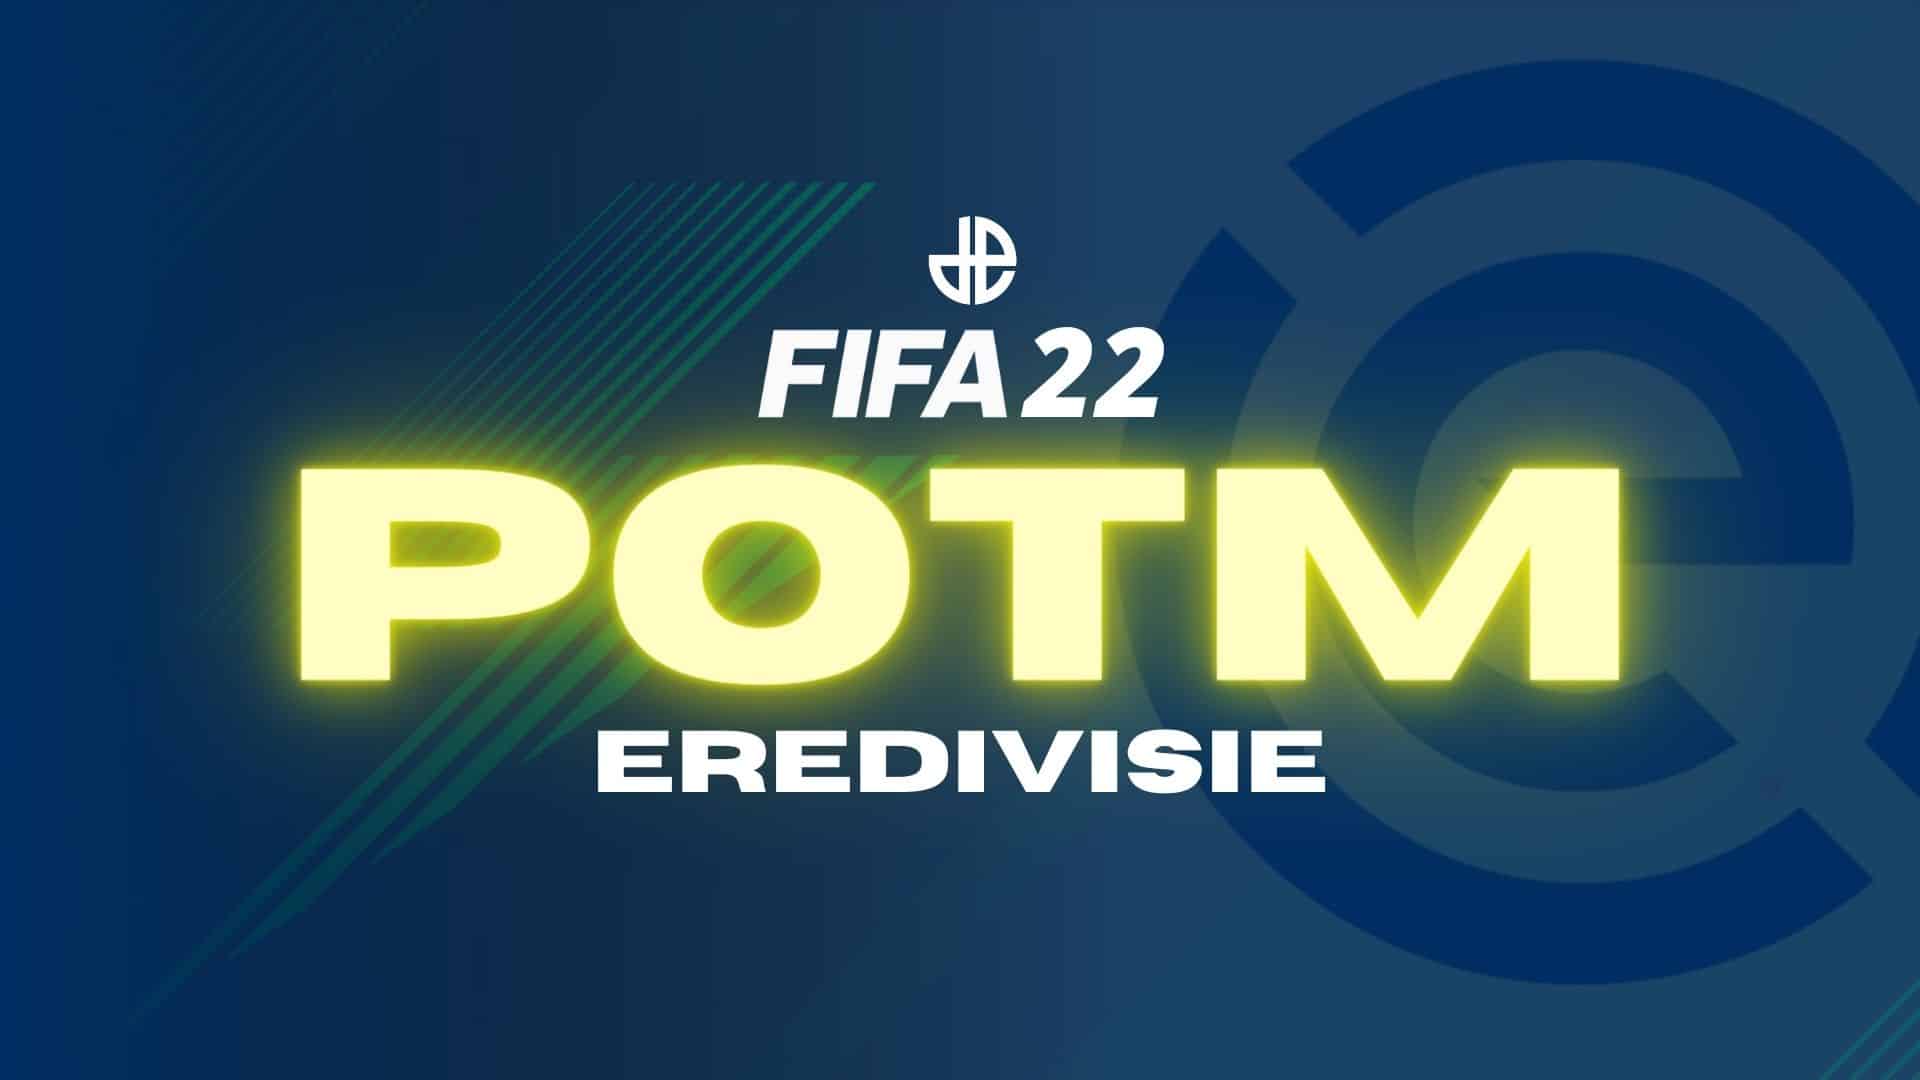 FIFA 22 Eredivisie POTM guide